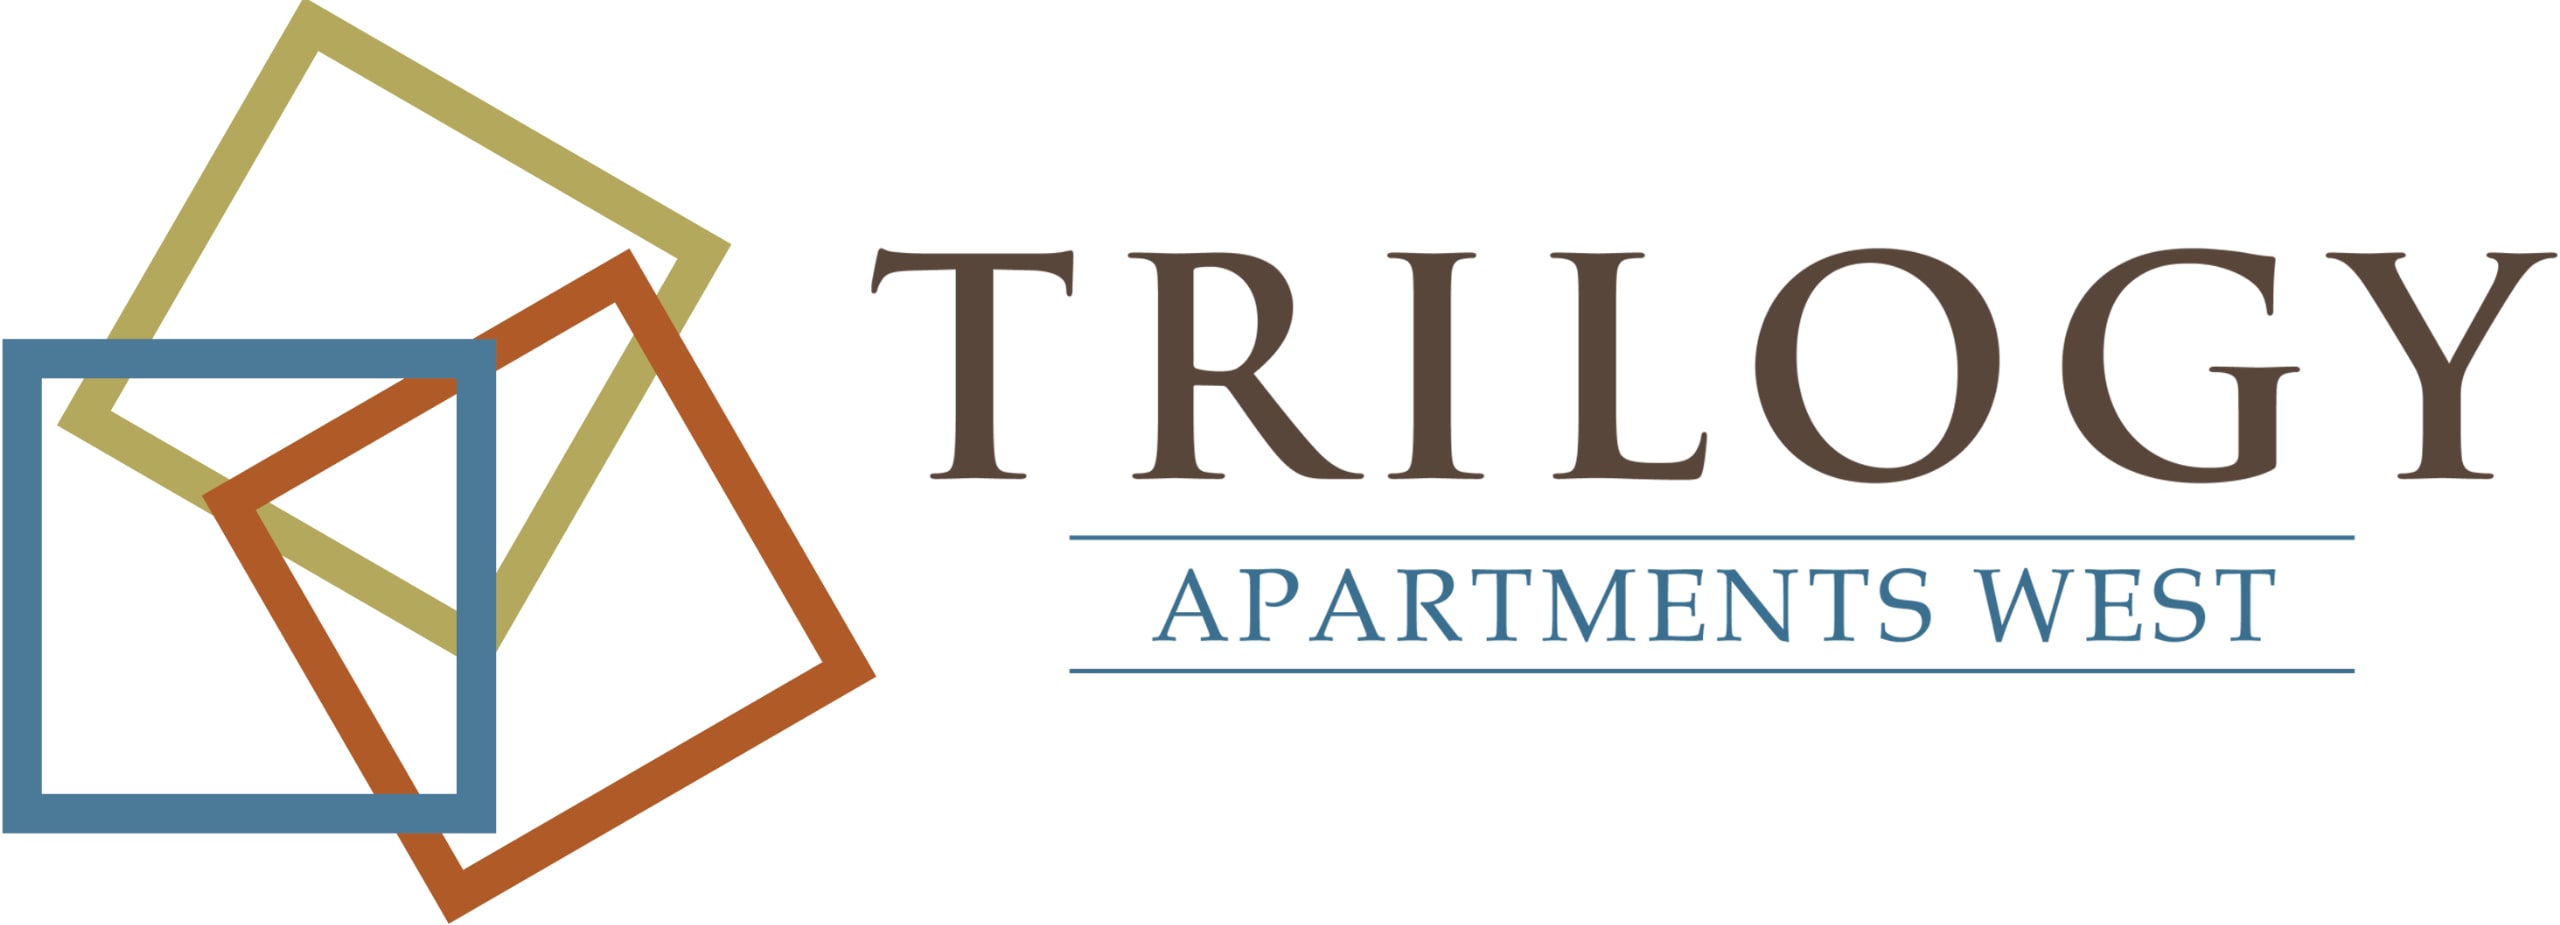 Trilogy West Apartments